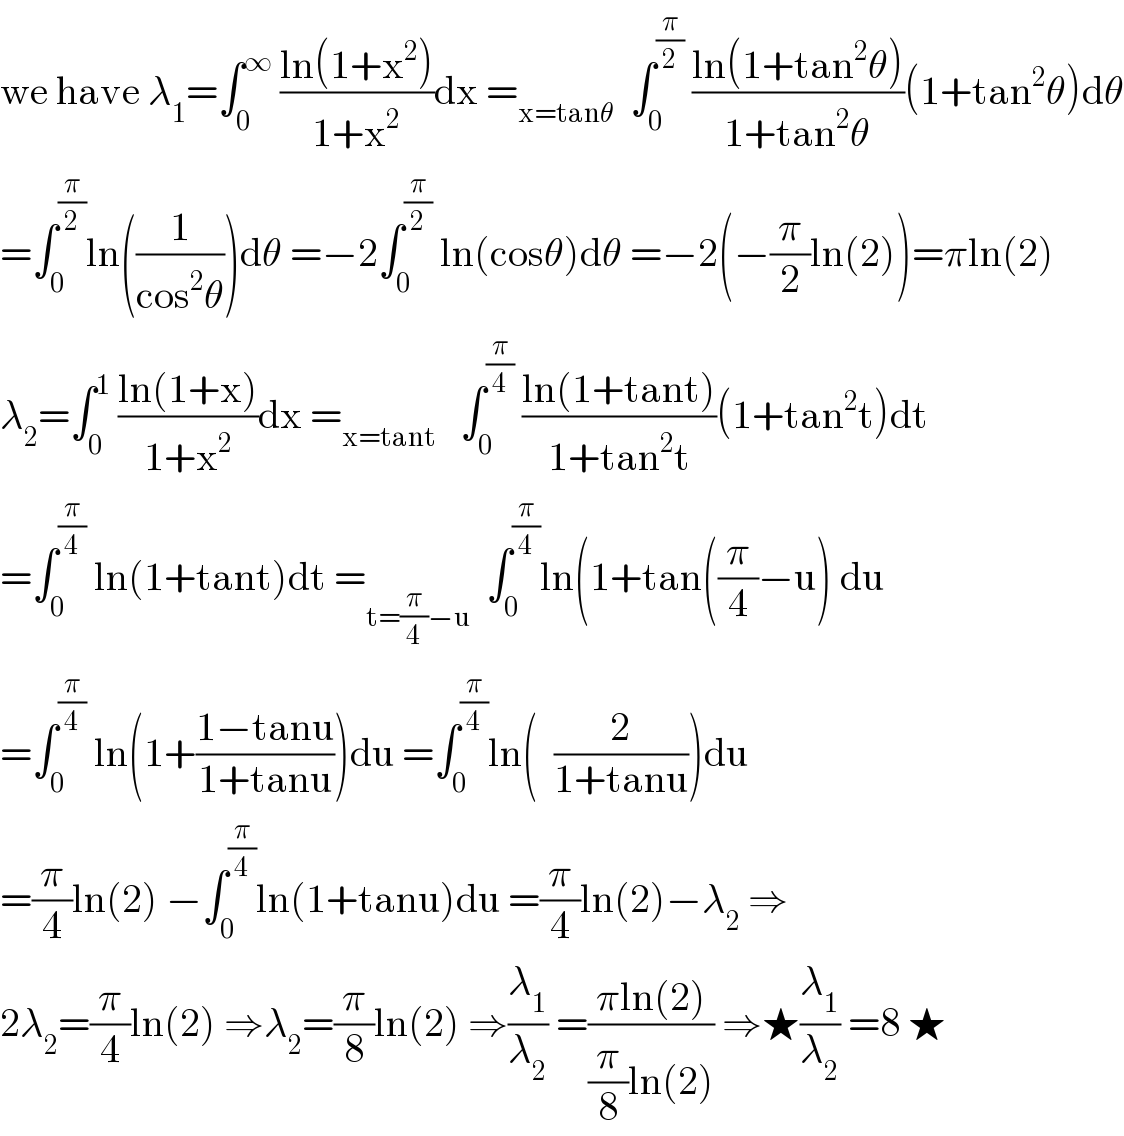 we have λ_1 =∫_0 ^∞  ((ln(1+x^2 ))/(1+x^2 ))dx =_(x=tanθ)   ∫_0 ^(π/2)  ((ln(1+tan^2 θ))/(1+tan^2 θ))(1+tan^2 θ)dθ  =∫_0 ^(π/2) ln((1/(cos^2 θ)))dθ =−2∫_0 ^(π/2)  ln(cosθ)dθ =−2(−(π/2)ln(2))=πln(2)  λ_2 =∫_0 ^1  ((ln(1+x))/(1+x^2 ))dx =_(x=tant)    ∫_0 ^(π/4)  ((ln(1+tant))/(1+tan^2 t))(1+tan^2 t)dt  =∫_0 ^(π/4)  ln(1+tant)dt =_(t=(π/4)−u)   ∫_0 ^(π/4) ln(1+tan((π/4)−u) du  =∫_0 ^(π/4)  ln(1+((1−tanu)/(1+tanu)))du =∫_0 ^(π/4) ln(  (2/(1+tanu)))du  =(π/4)ln(2) −∫_0 ^(π/4) ln(1+tanu)du =(π/4)ln(2)−λ_2  ⇒  2λ_2 =(π/4)ln(2) ⇒λ_2 =(π/8)ln(2) ⇒(λ_1 /λ_2 ) =((πln(2))/((π/8)ln(2))) ⇒★(λ_1 /λ_2 ) =8 ★  